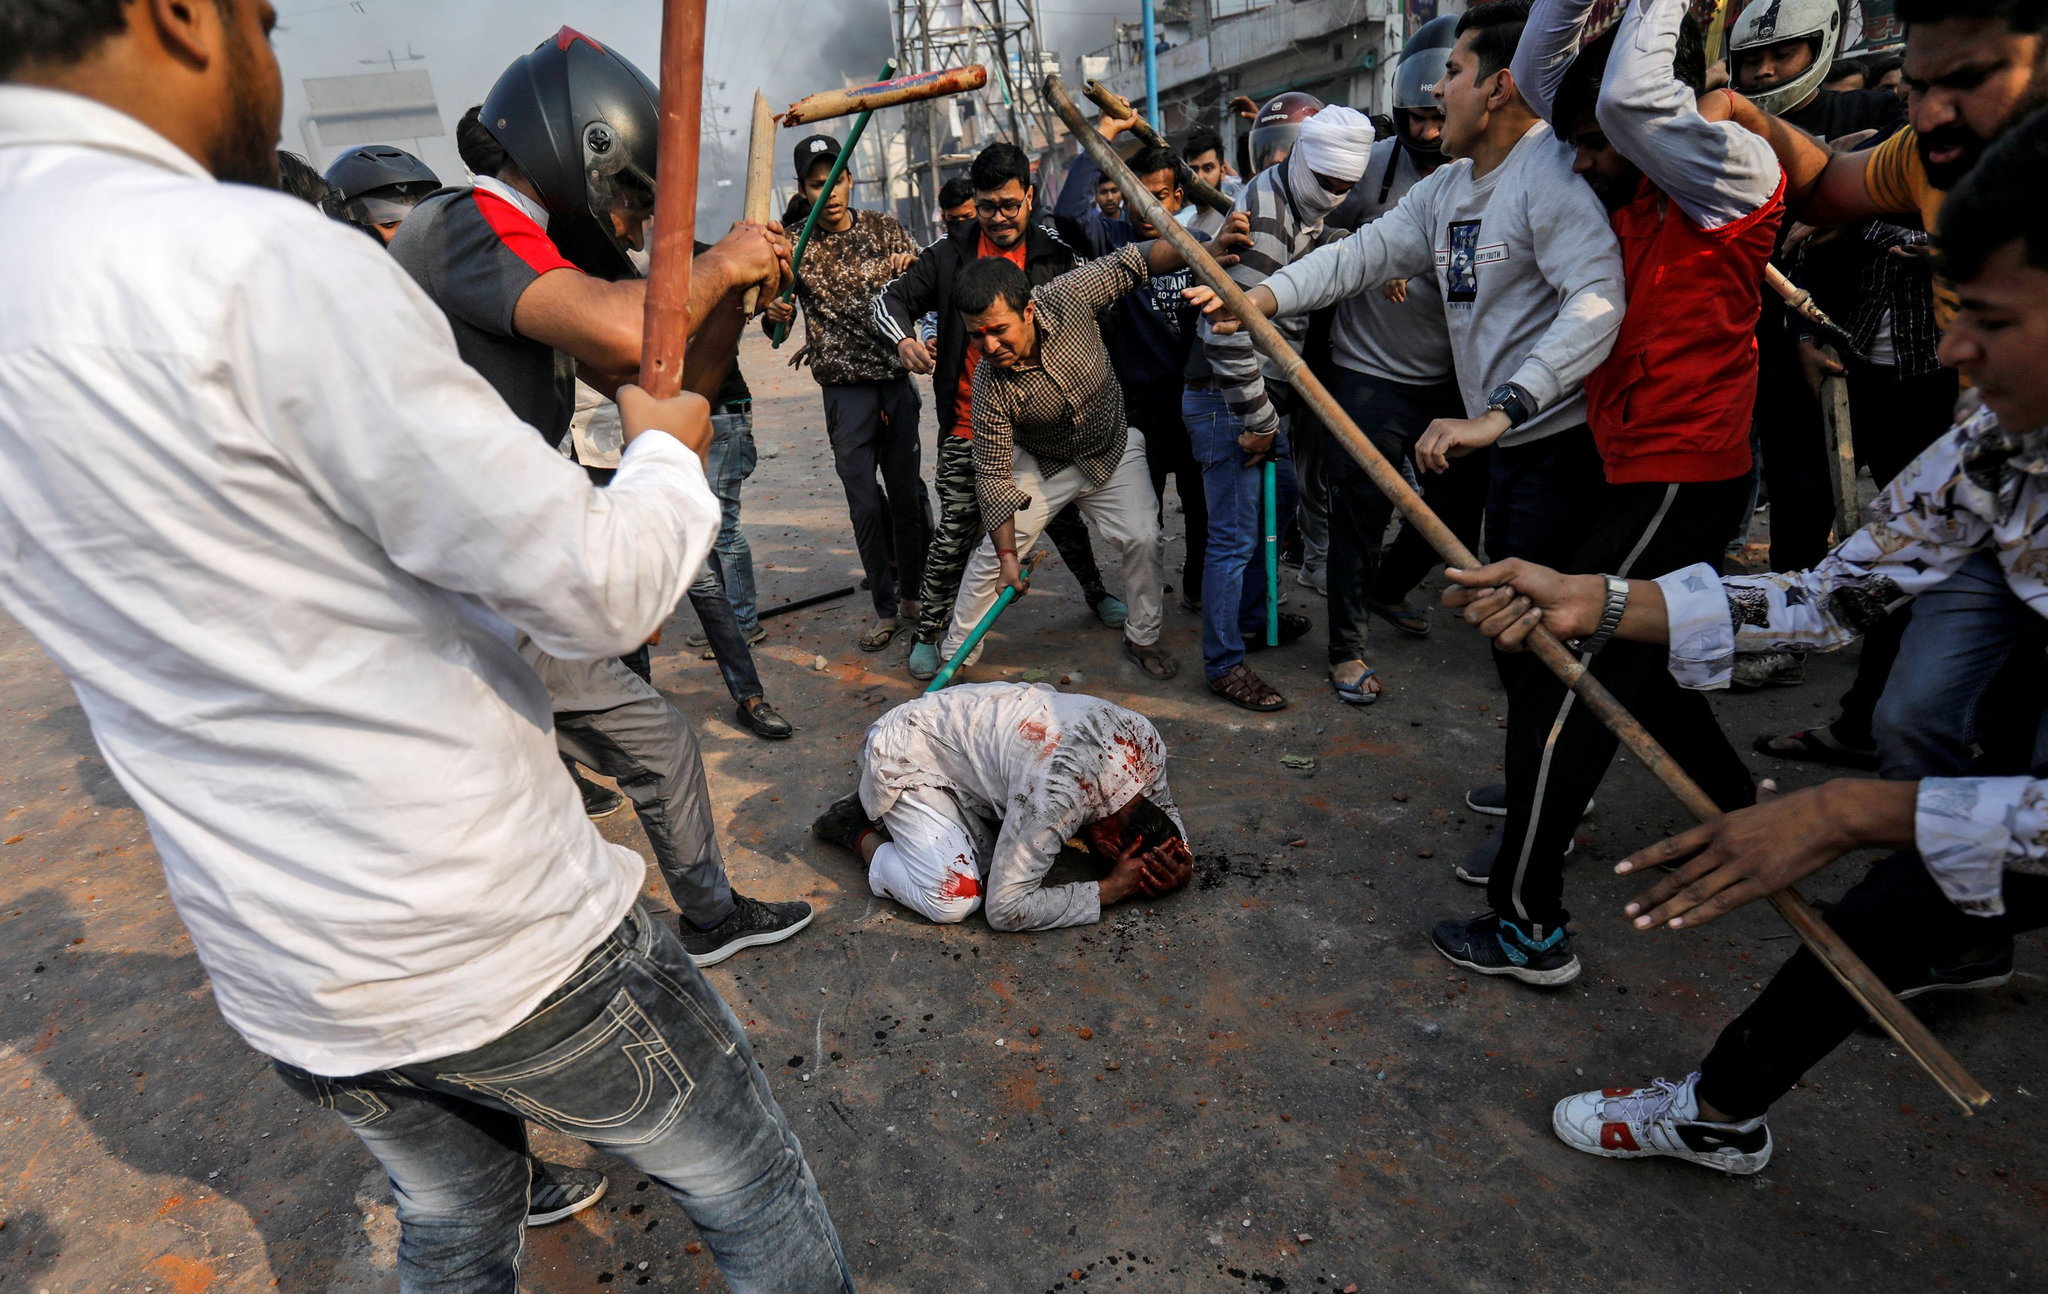 हिंसाको आगोमा दन्दनी दिल्ली : के धर्मकै विषयले निम्त्याएको हो संकट? 